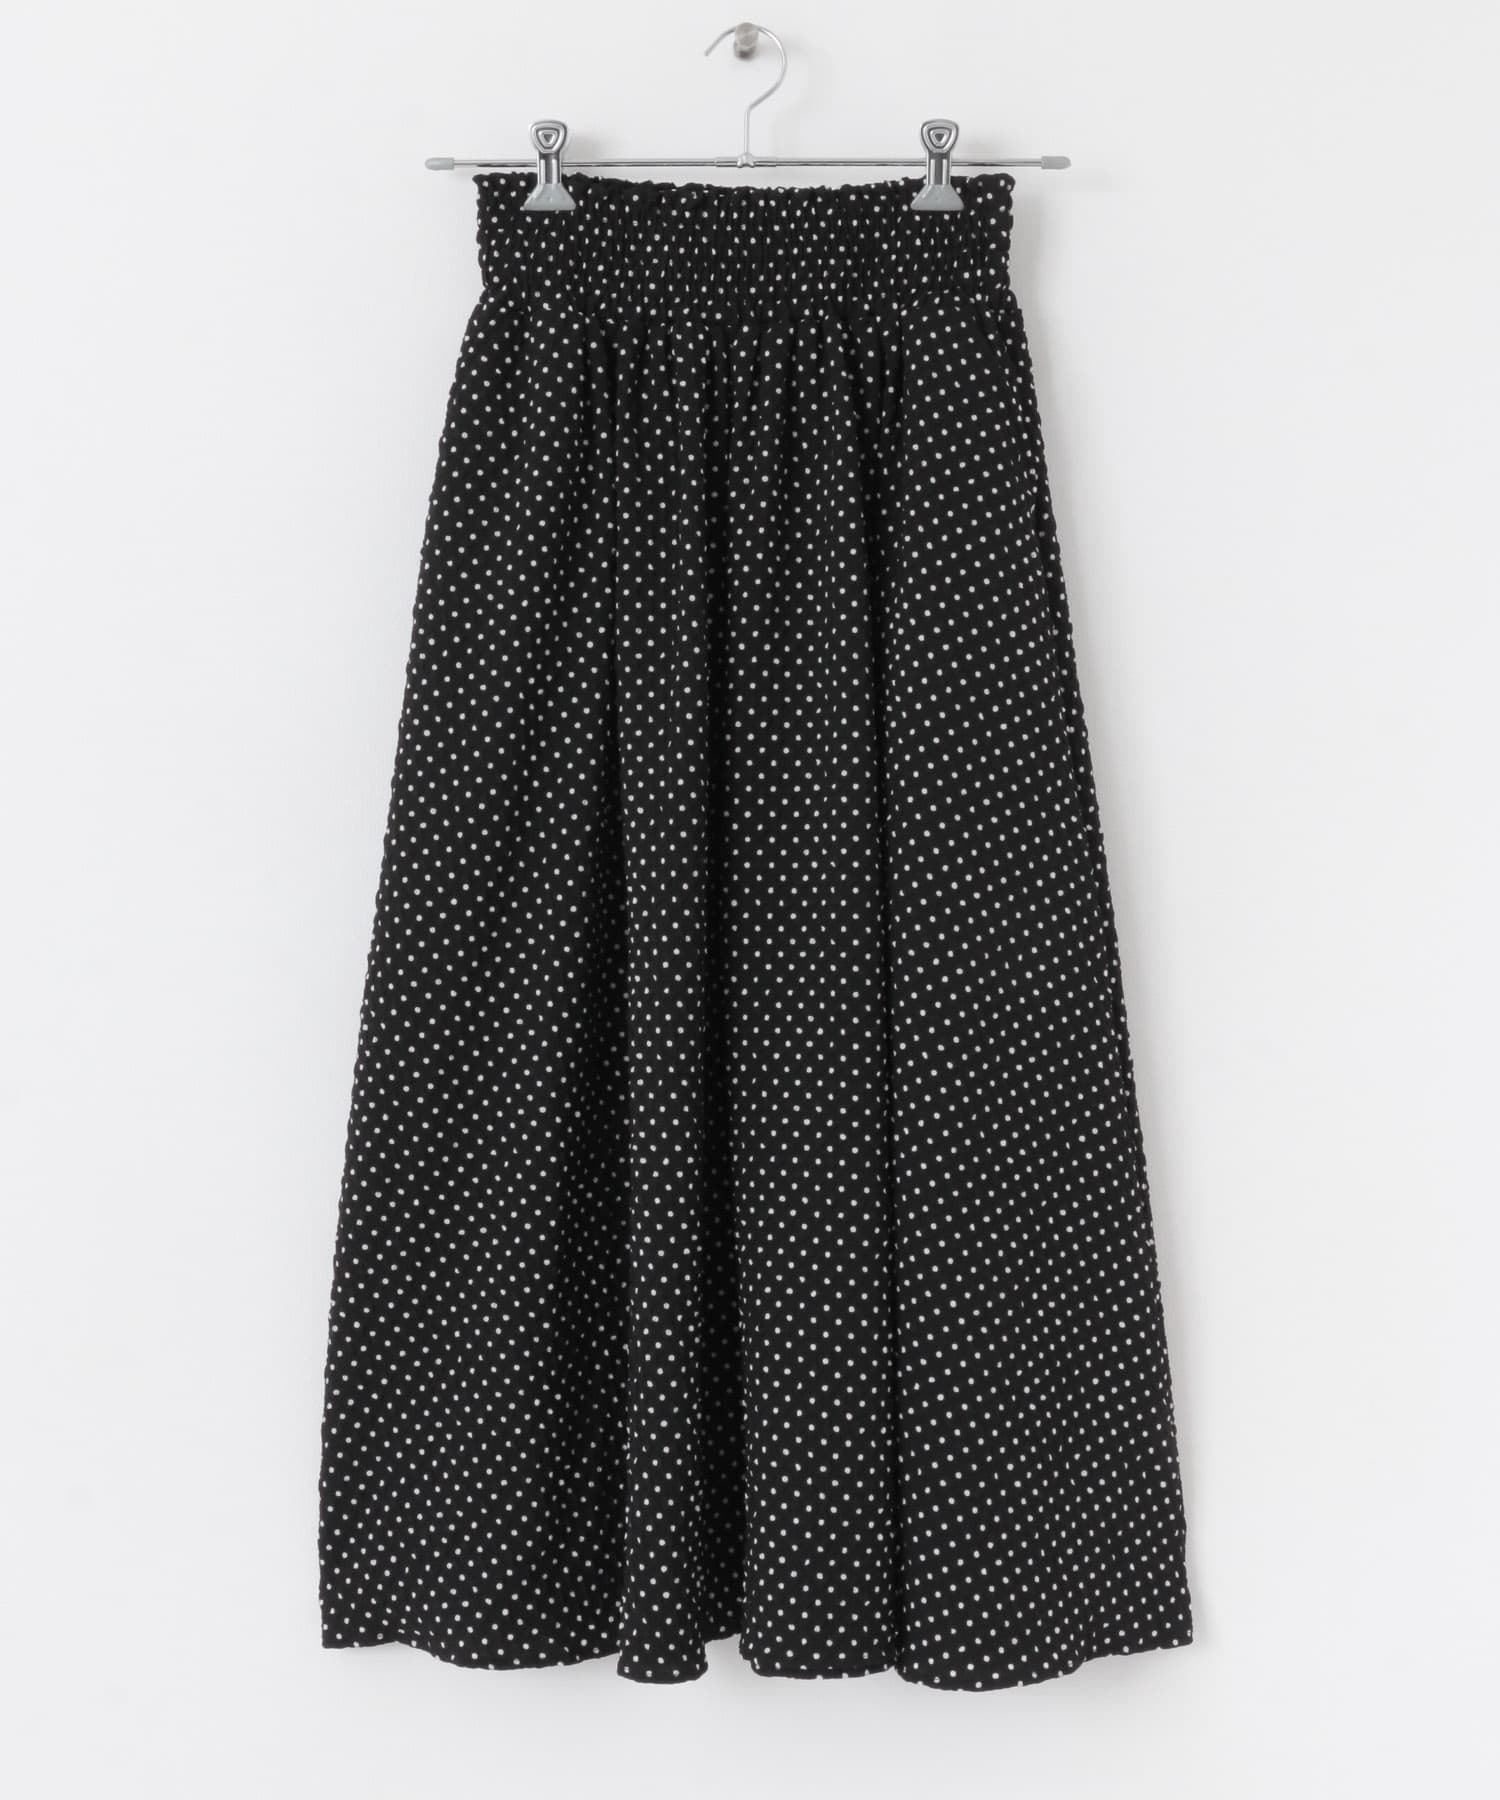 浮凸點點碎褶裙(黑色-36-BLACK)